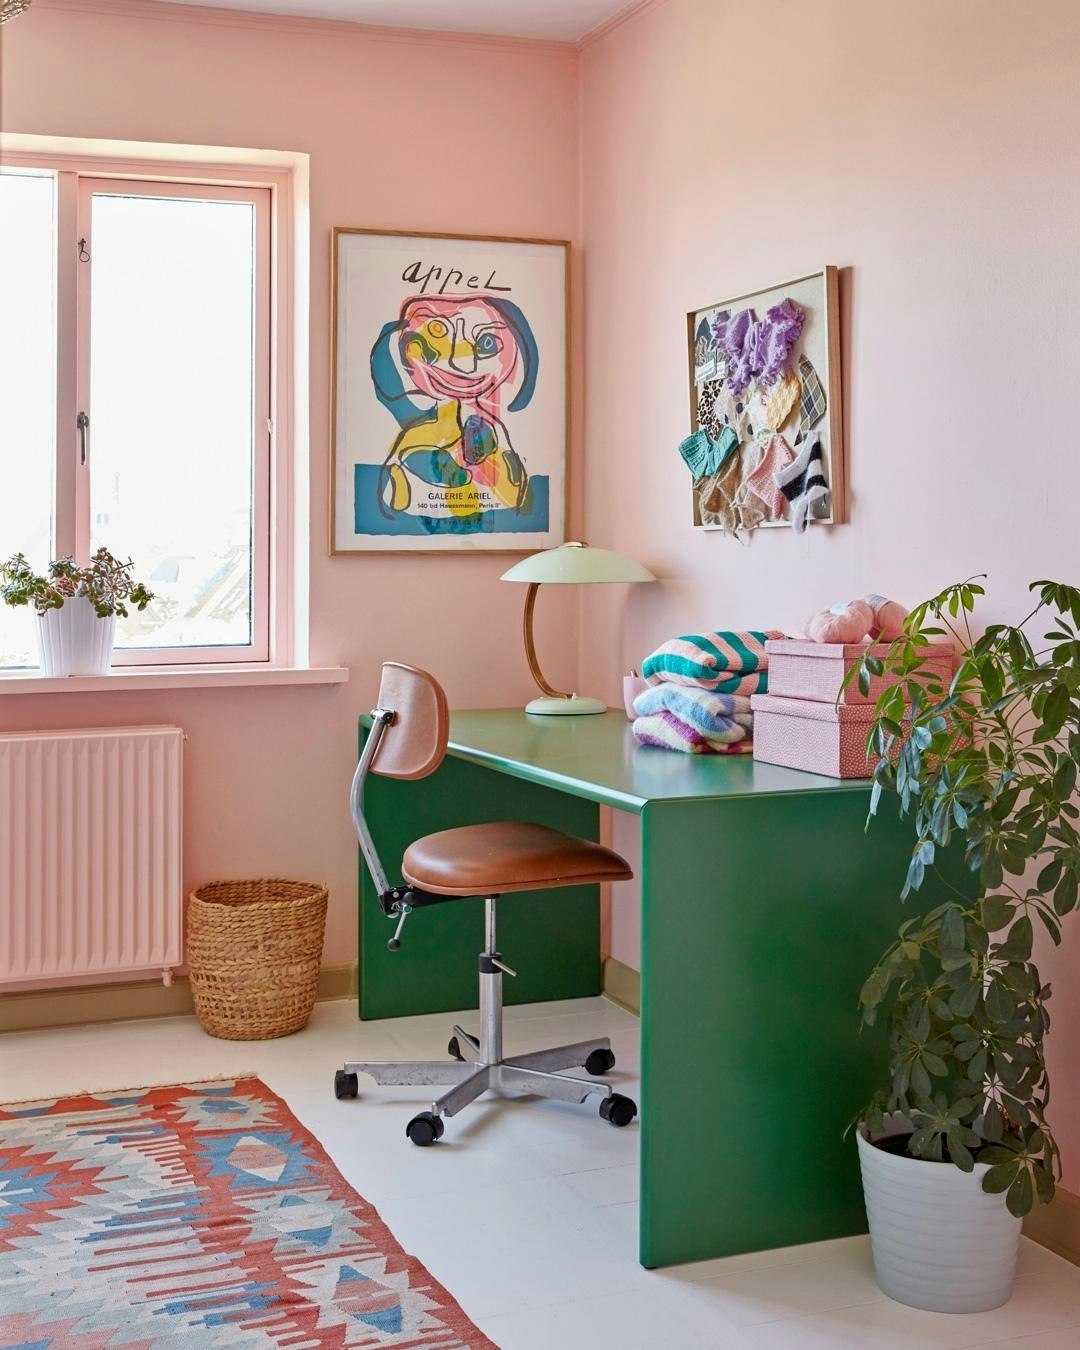 hjemmekontor_indretning_inspiration_praktisk_smukt_lille_kontor_groentbord